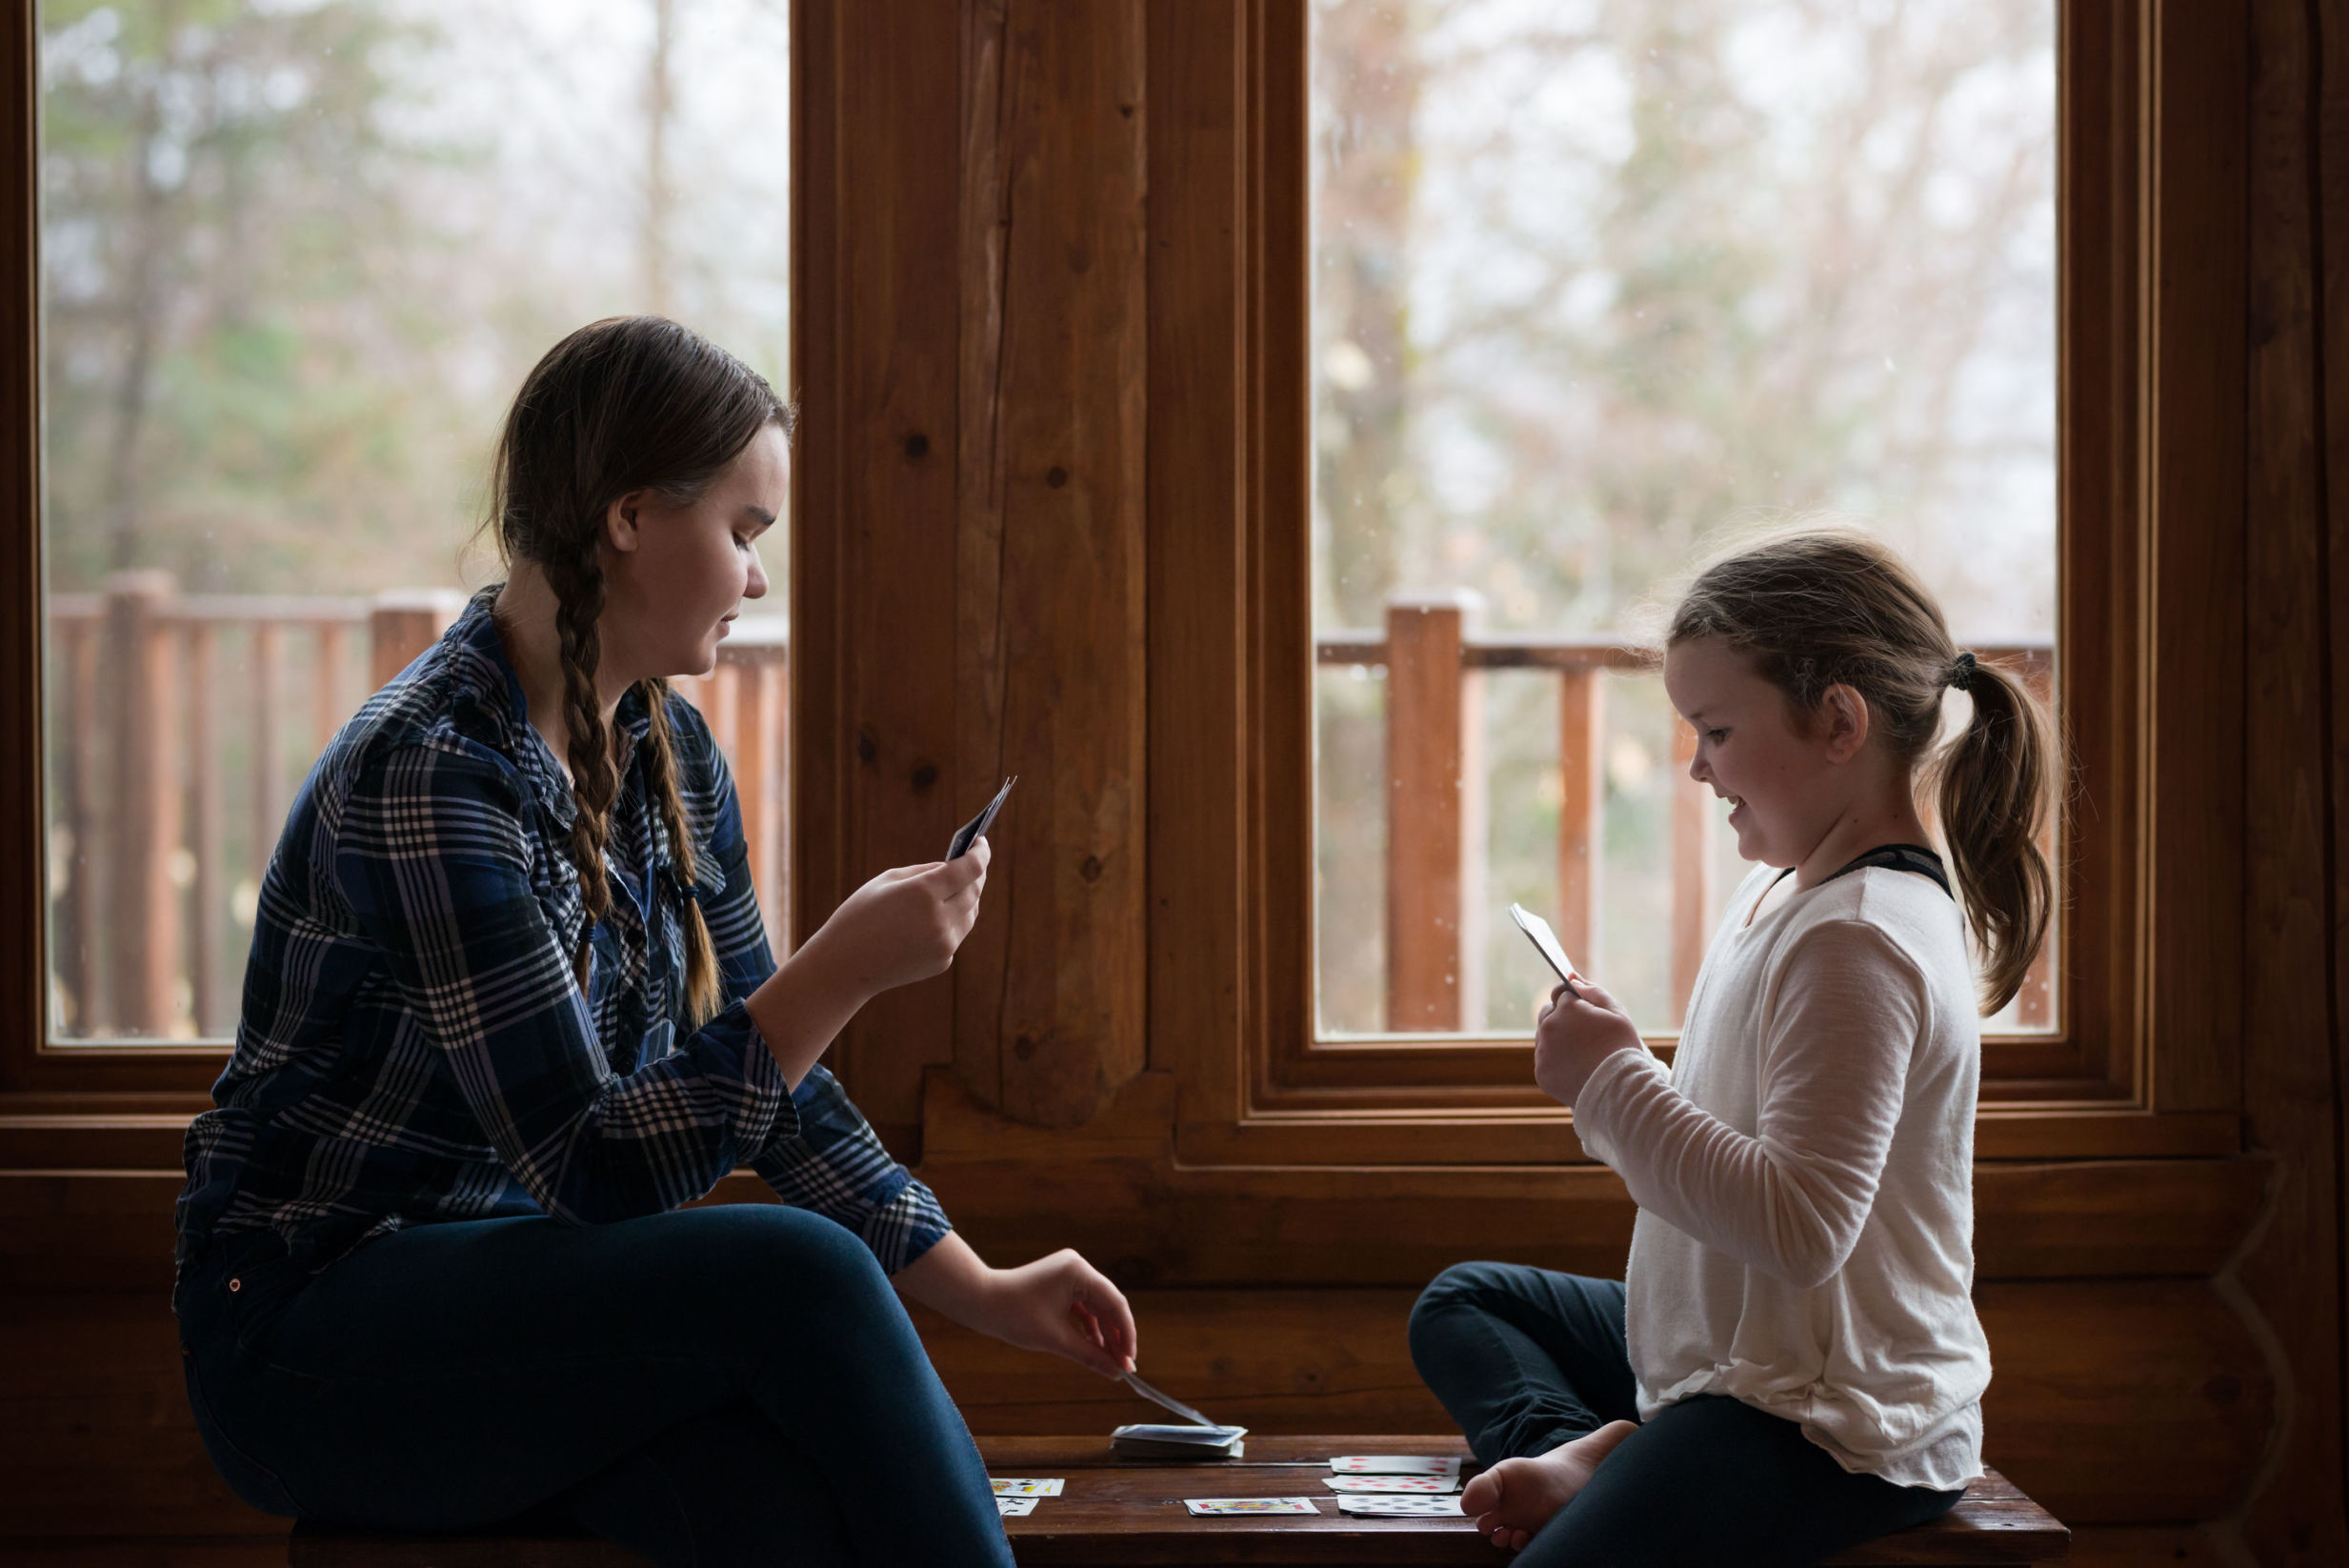 Belehnung Hypothek: Mutter und Tochter spielen Karten